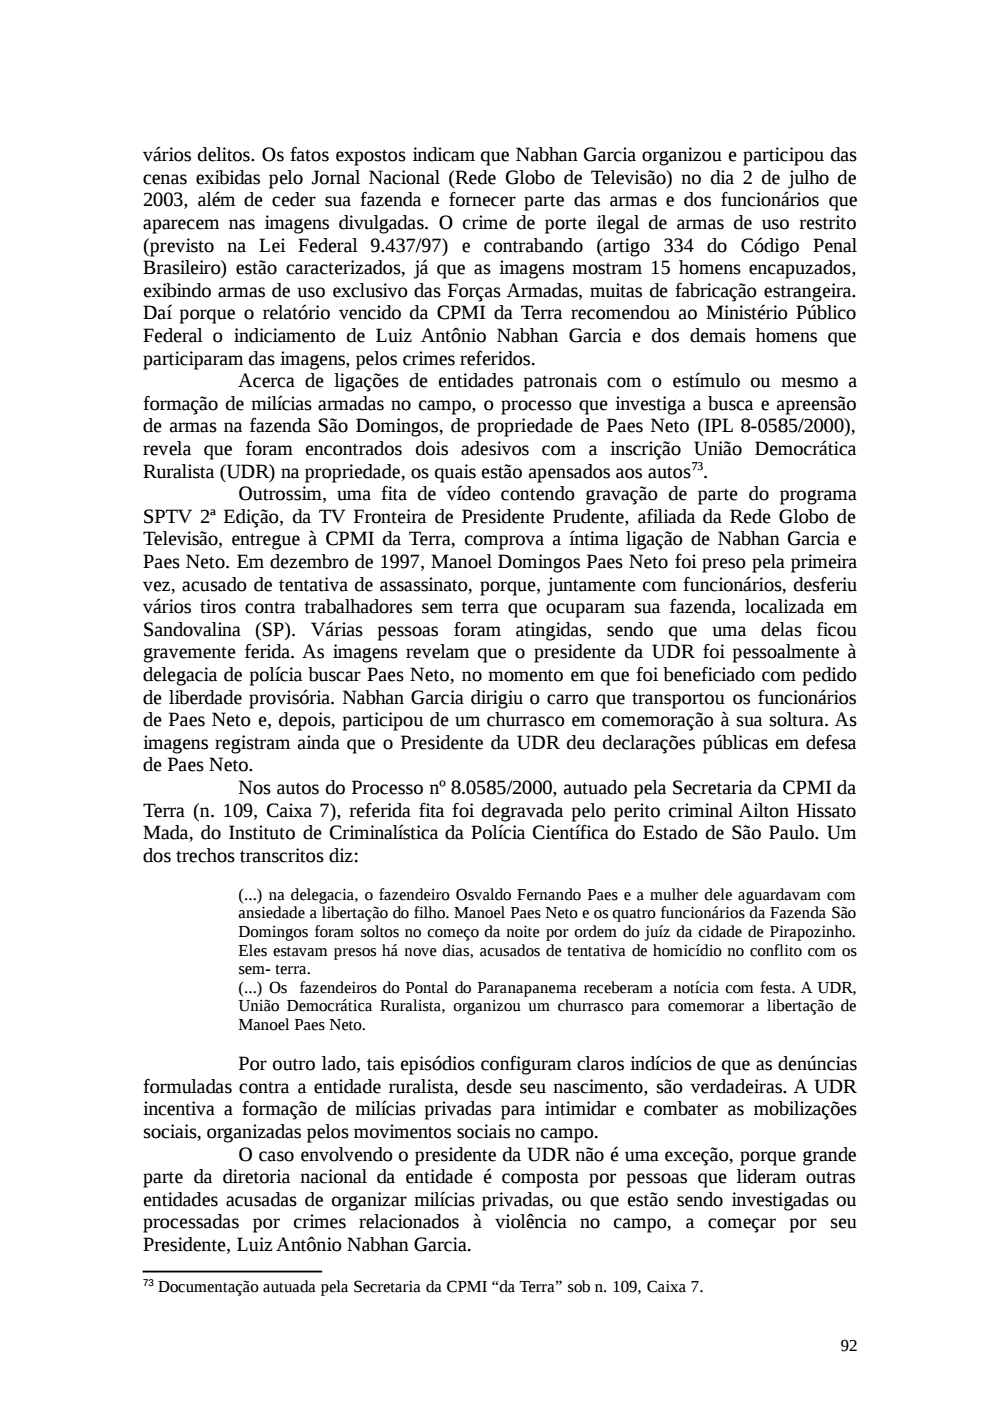 Page 92 from Relatório final da comissão